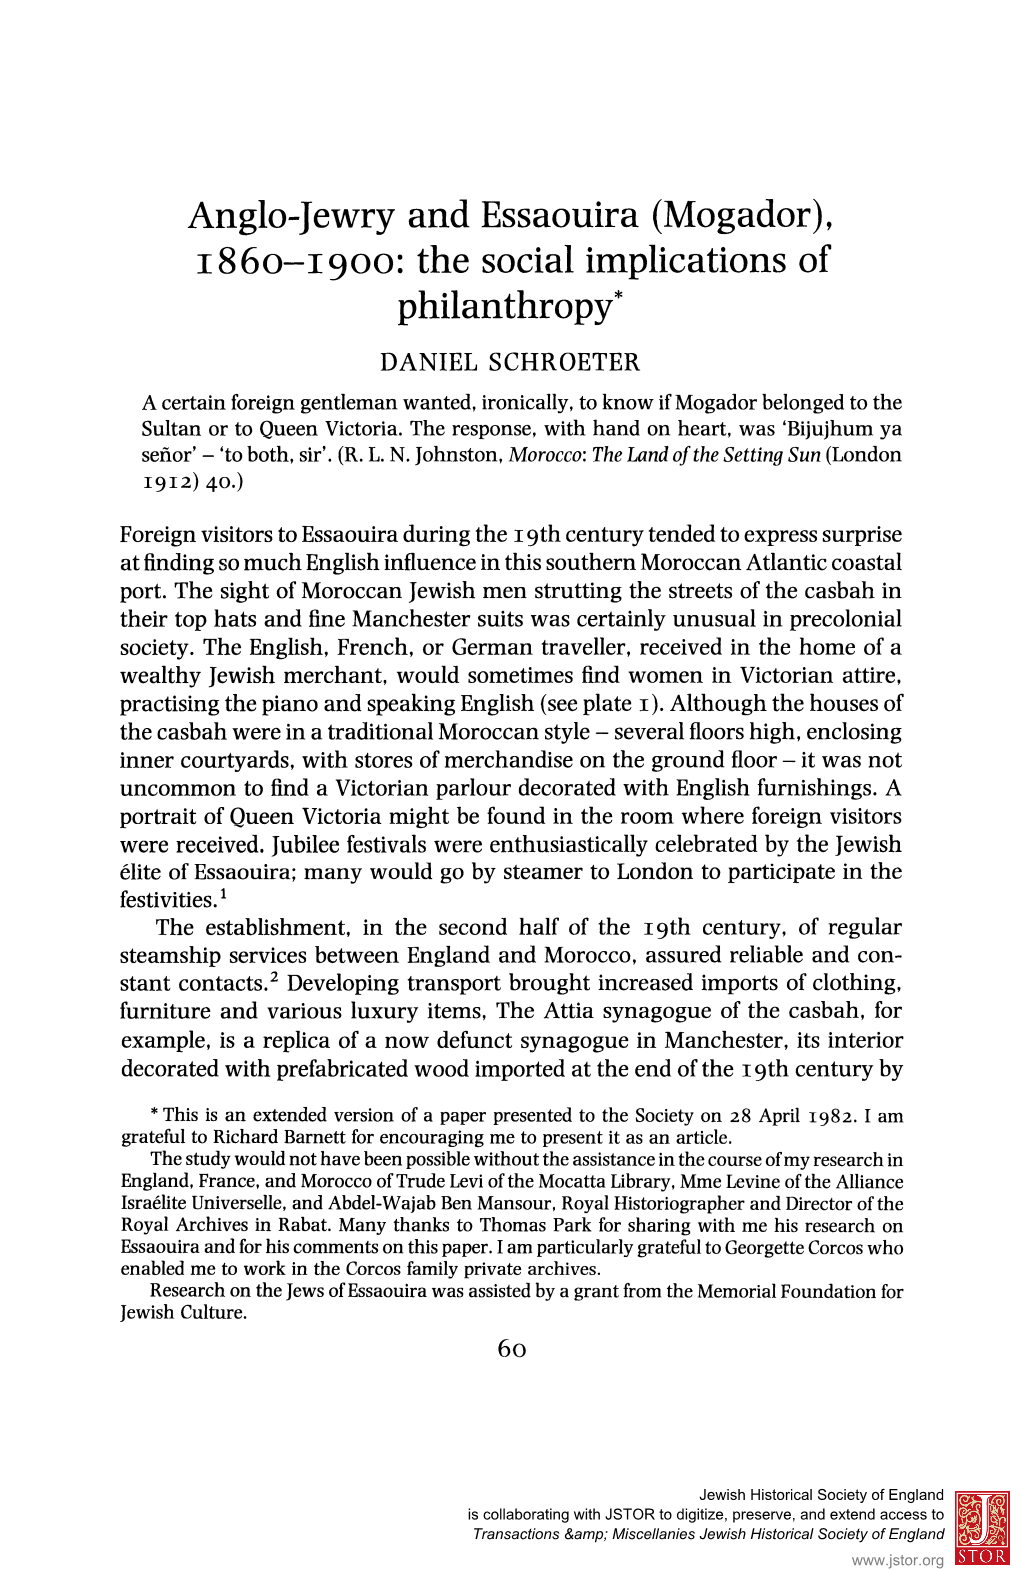 Anglo-Jewry and Essaouira (Mogador), I860-1900: the Social Implications of Philanthropy* DANIEL SCHROETER